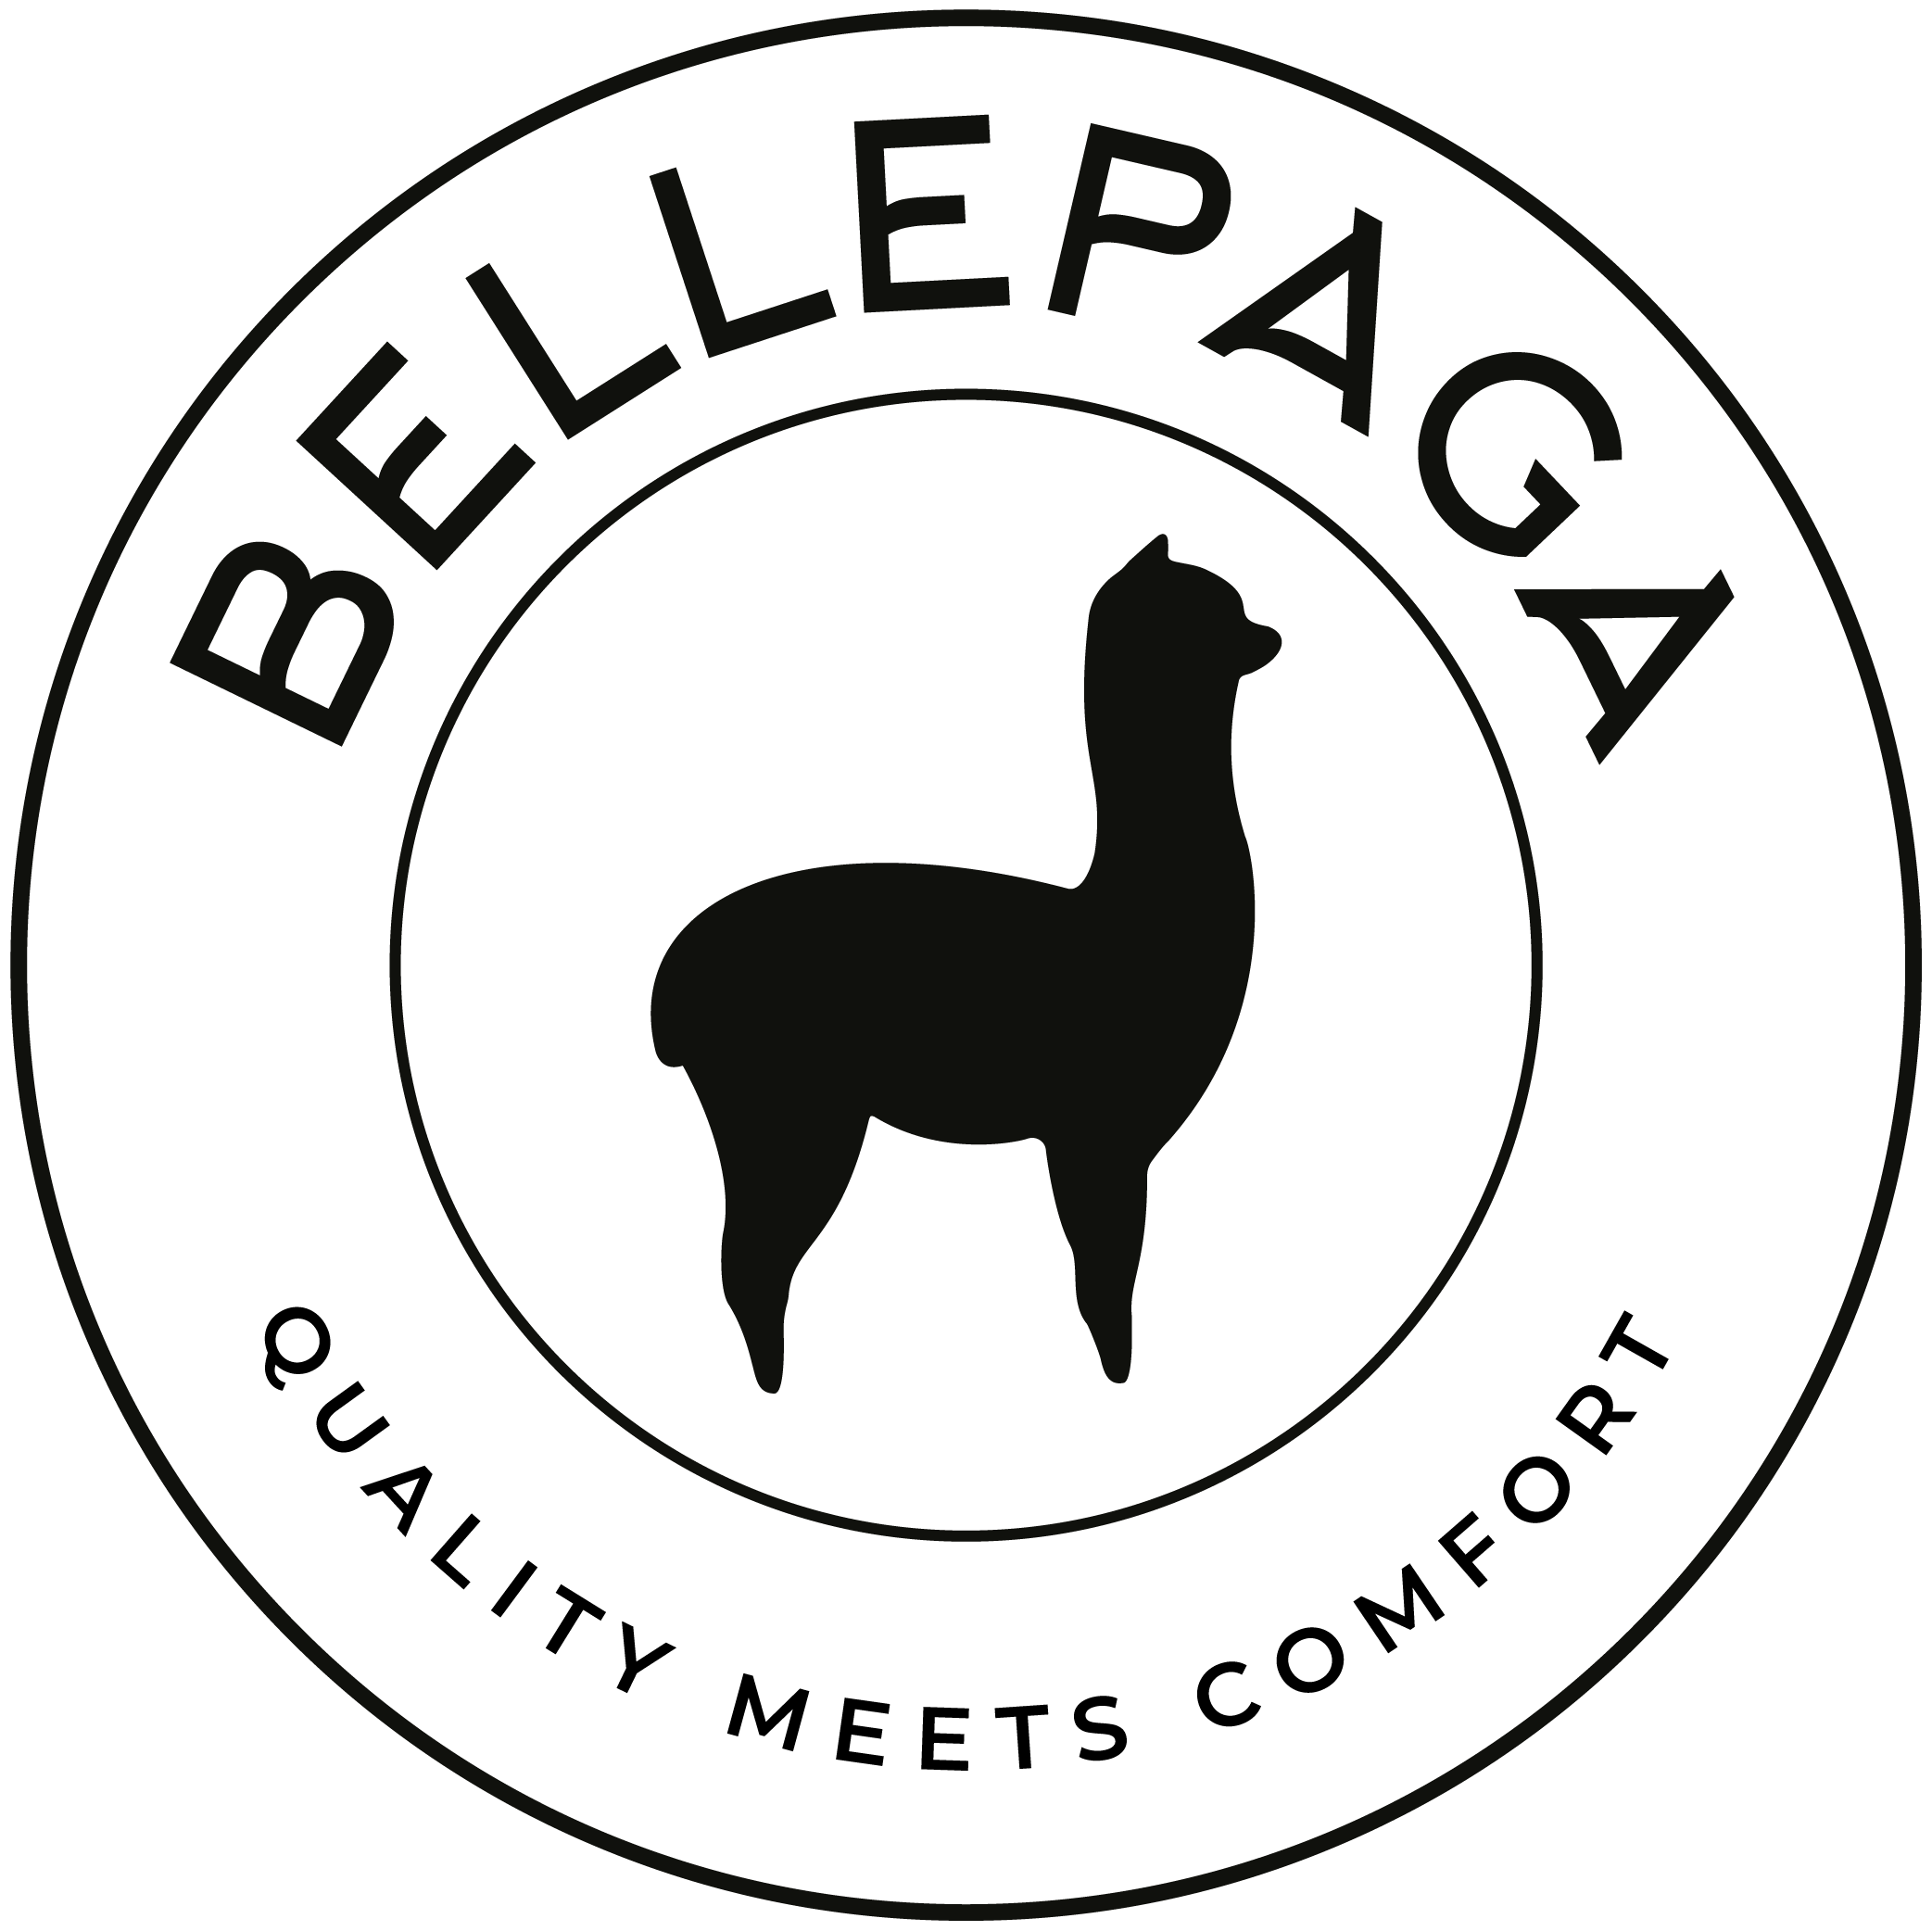 Chaussettes femme - BellePaga